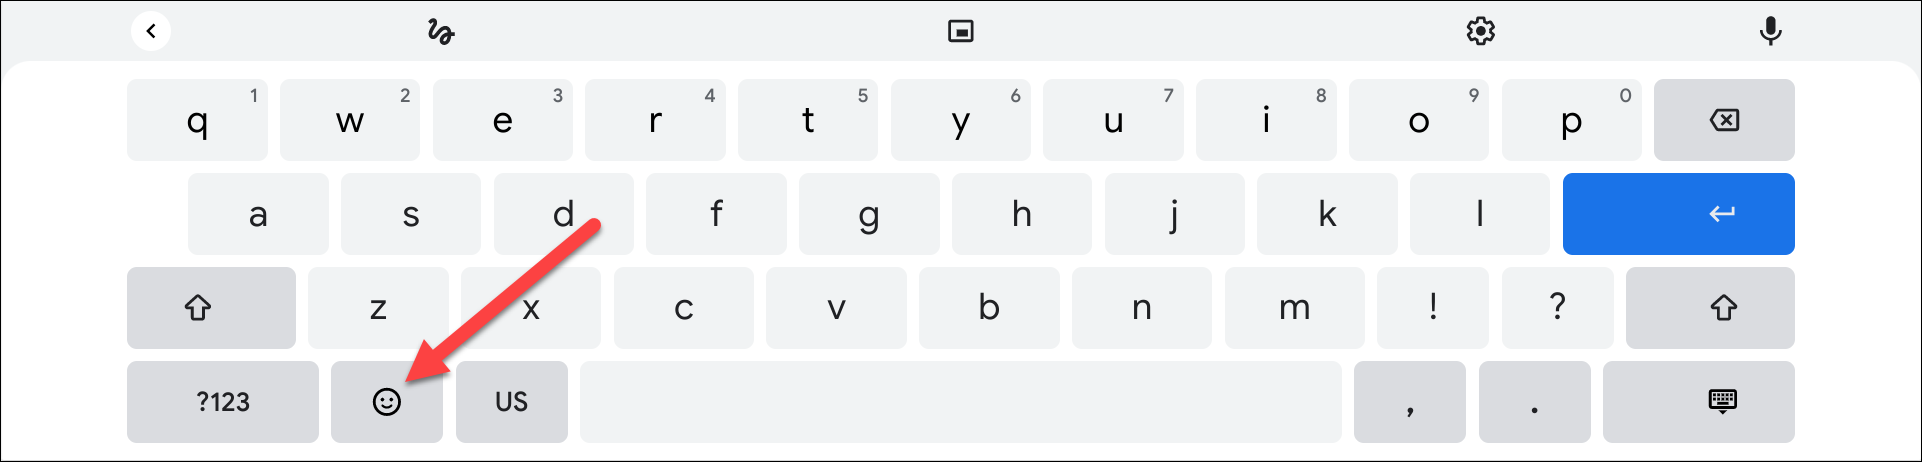 botão de emoji no teclado virtual